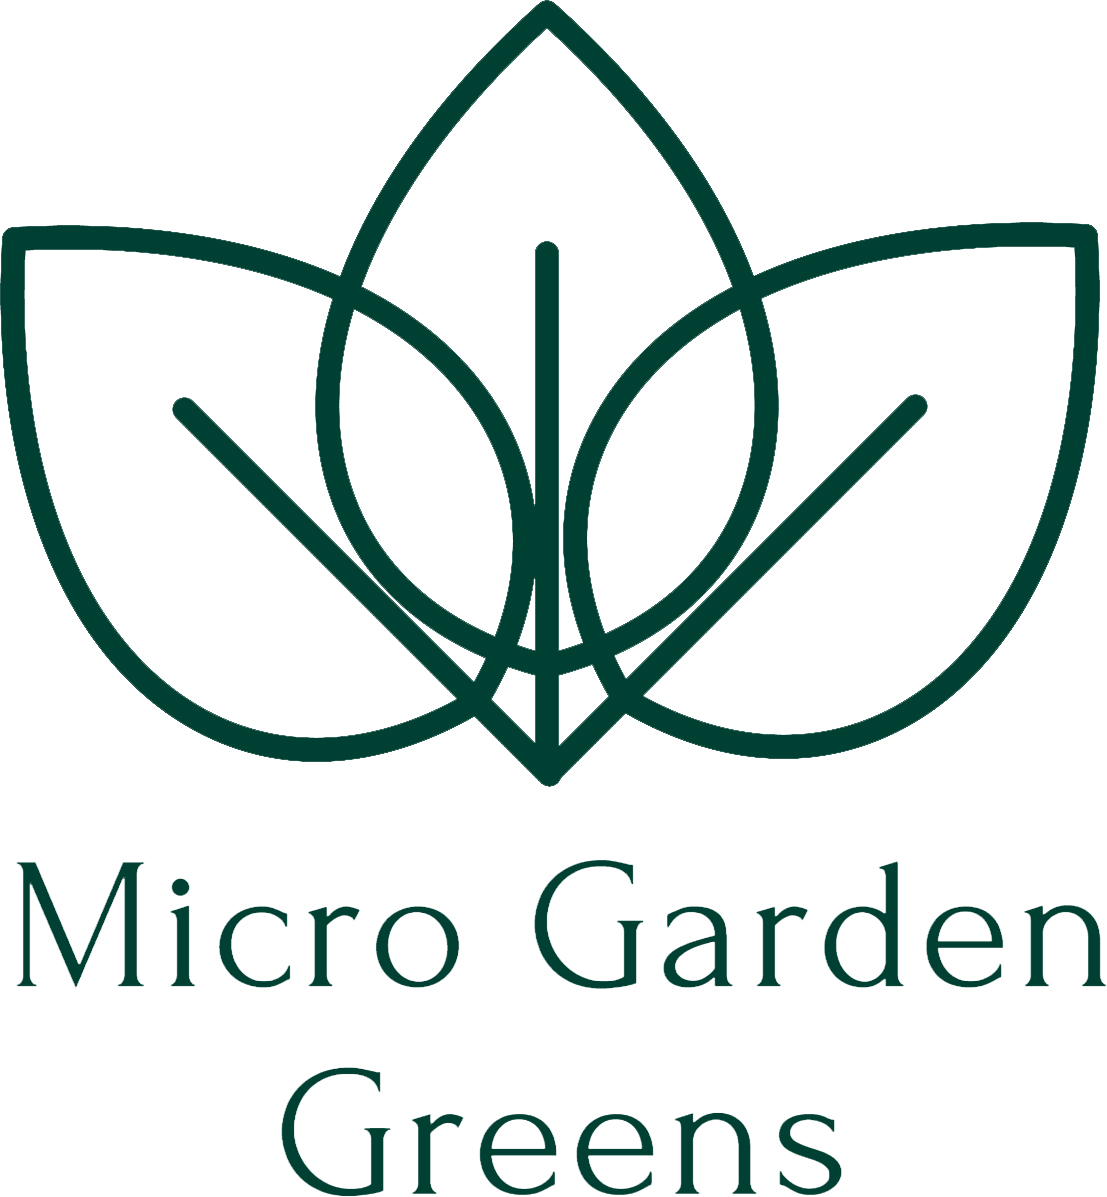 Micro Garden Greens